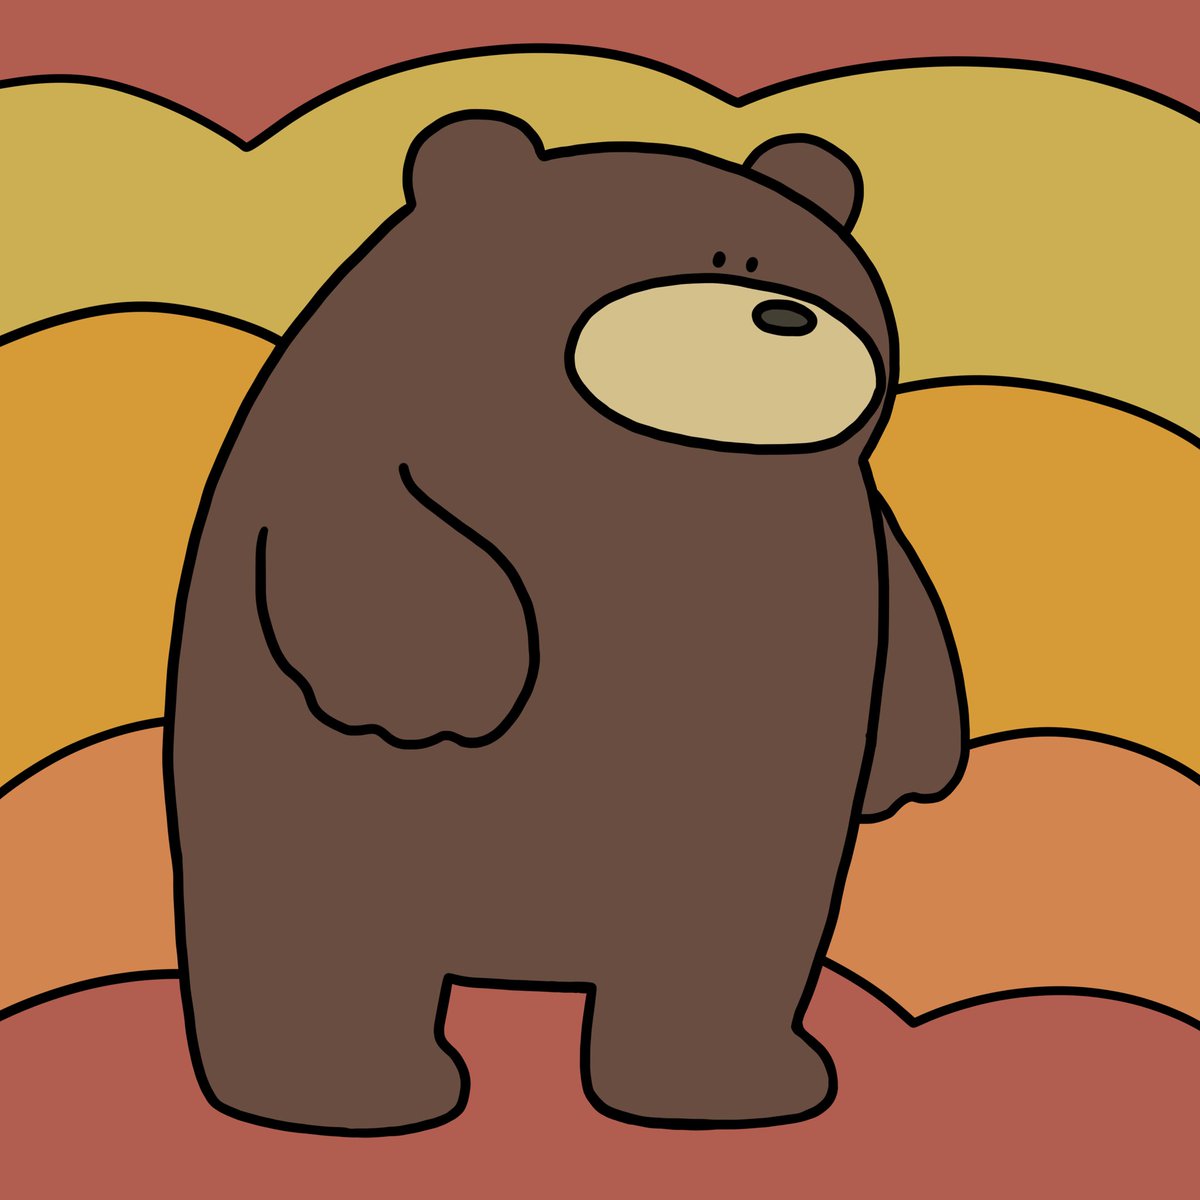 テツロウ Twitterren 秋のくまさん 深まっていく秋 冬眠の時期が近づくくまさん 熊 くま ベア 動物 アニマル 秋 イラスト